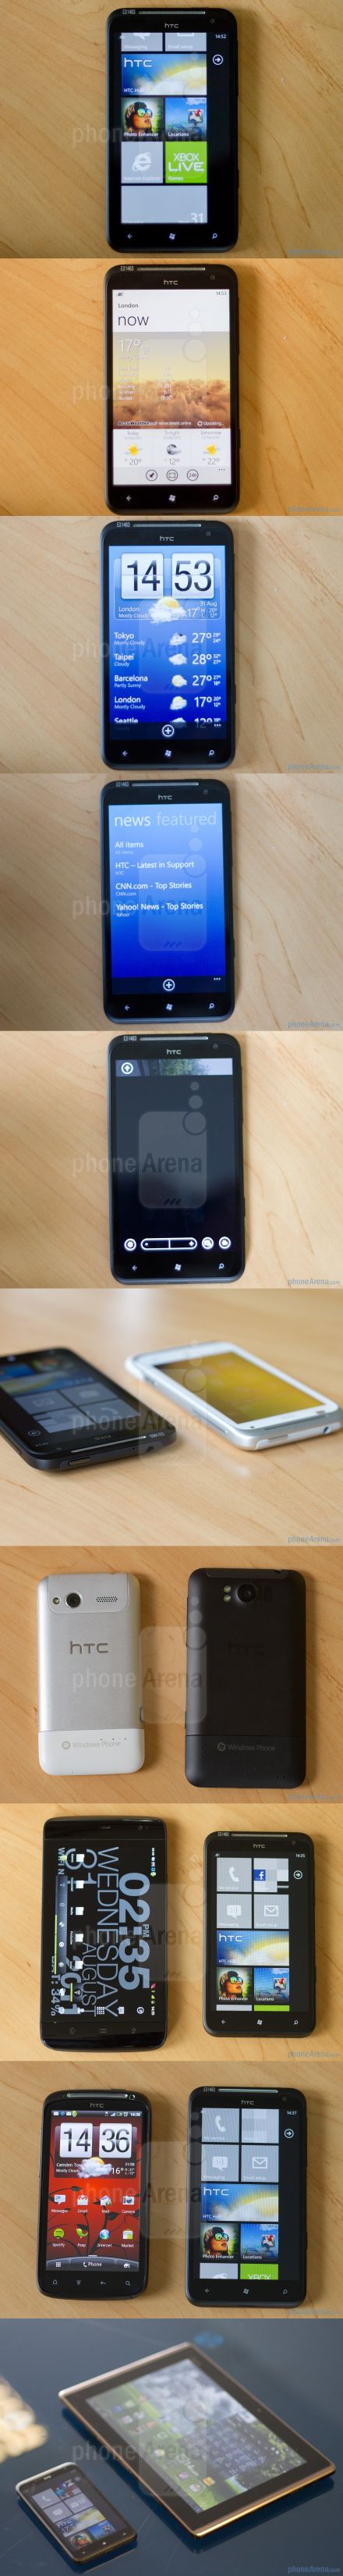 HTC Titan: nagyágyú WP Mangoval